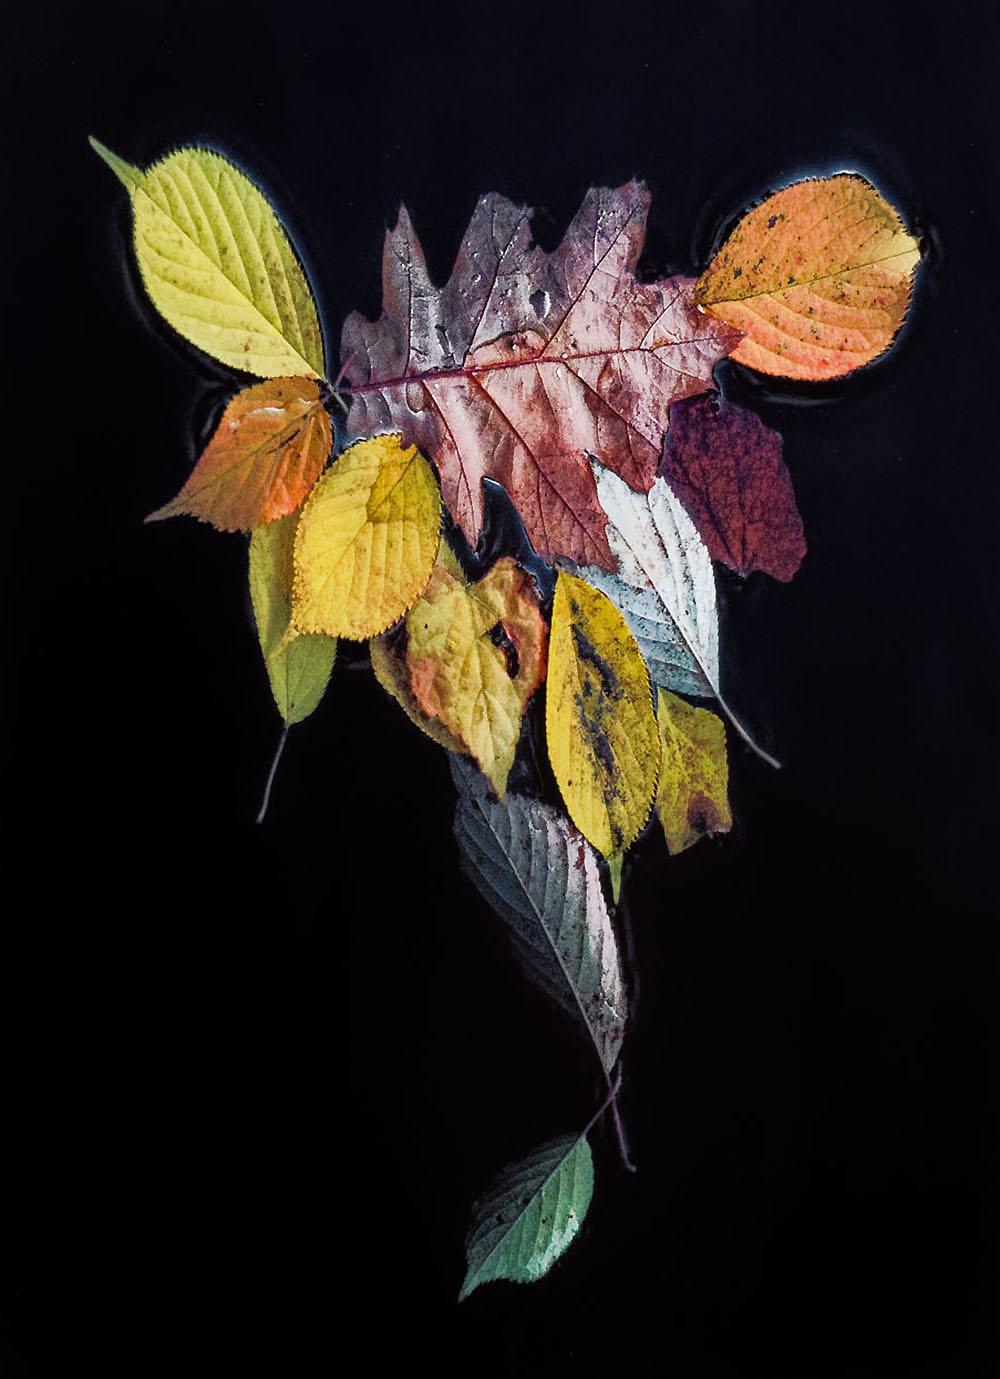 La danse de la nature, photographie contemporaine en couleur, édition limitée  - Photograph de Hank Gans